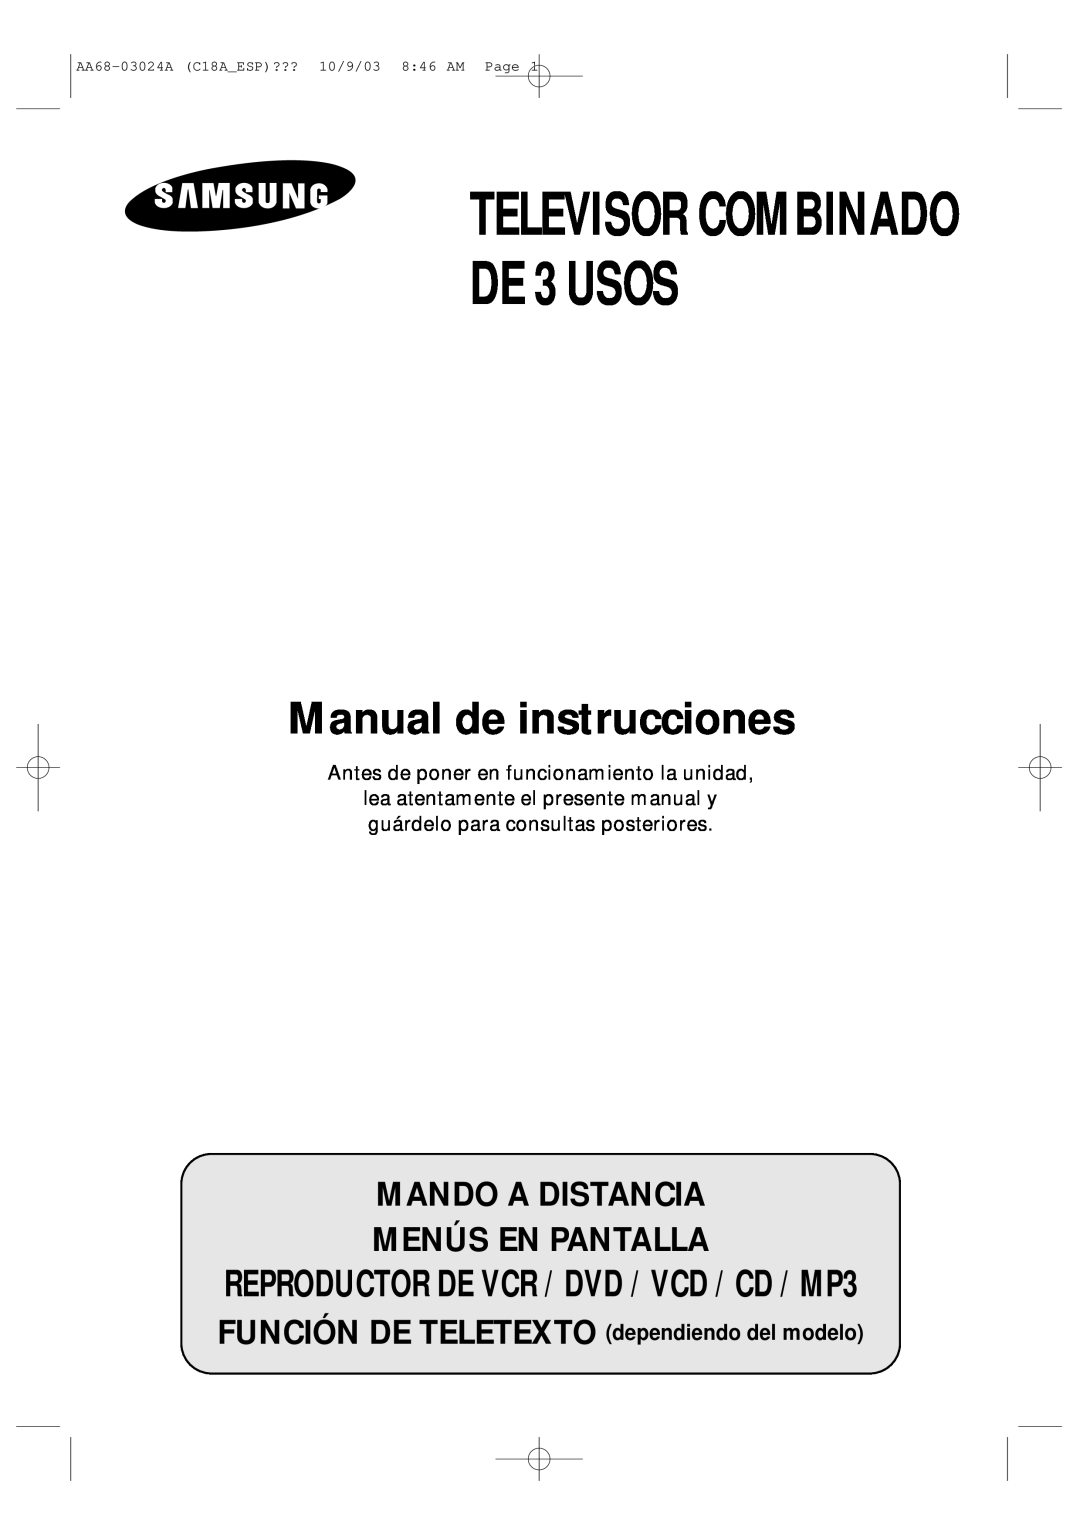 Samsung UW17J11VD5XXEF manual Mando A Distancia Menús En Pantalla, TELEVISOR COMBINADO DE 3 USOS, Manual de instrucciones 